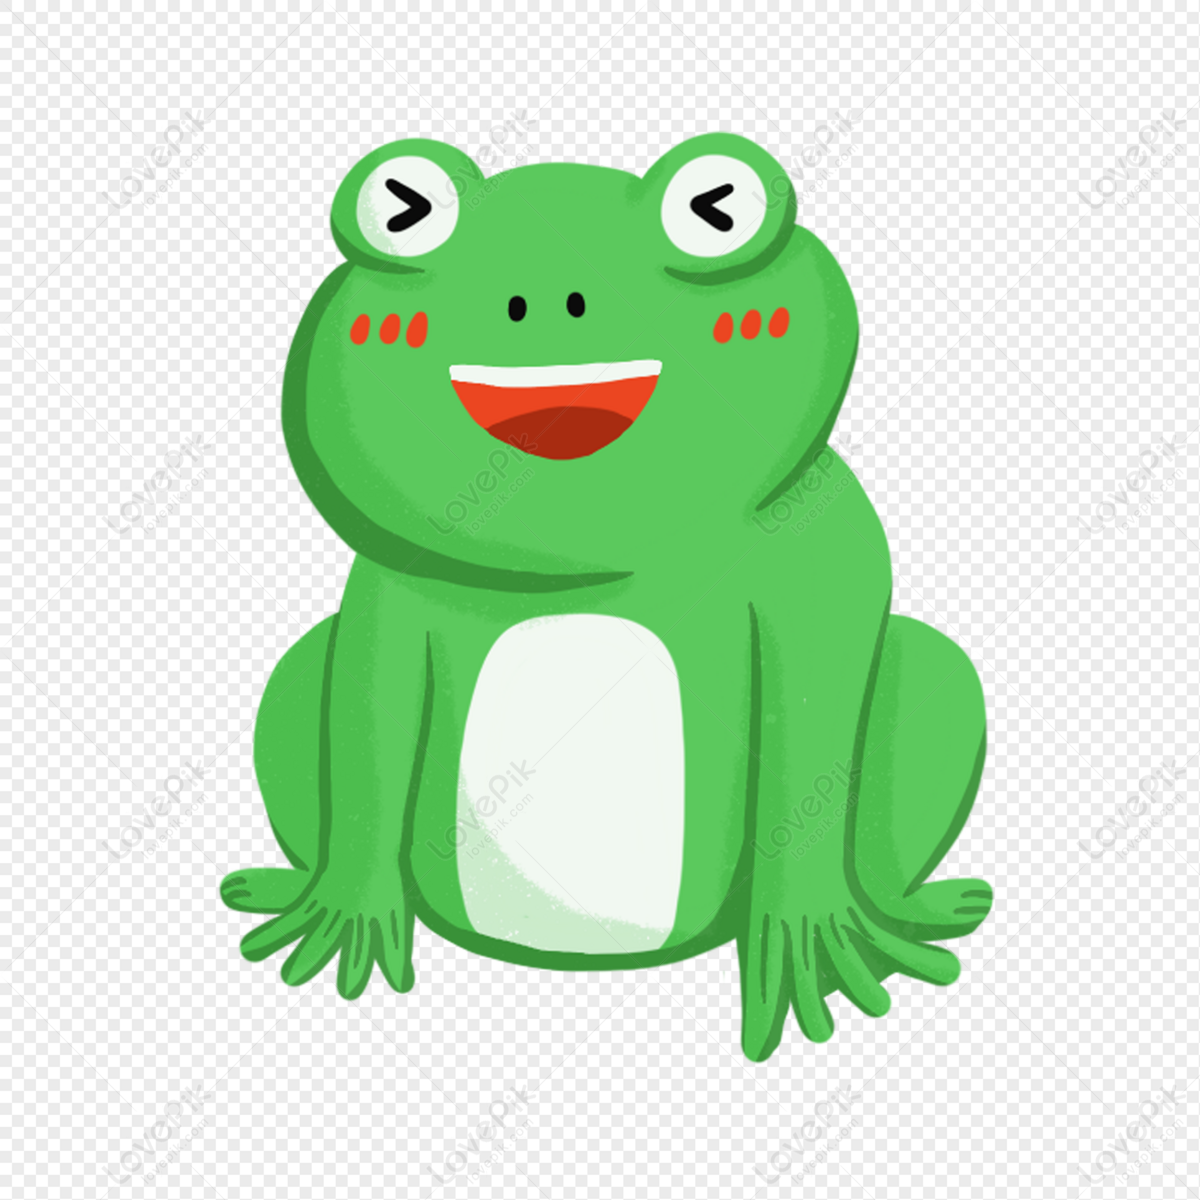 Hình ảnh Một Con ếch Xanh PNG Miễn Phí Tải Về - Lovepik